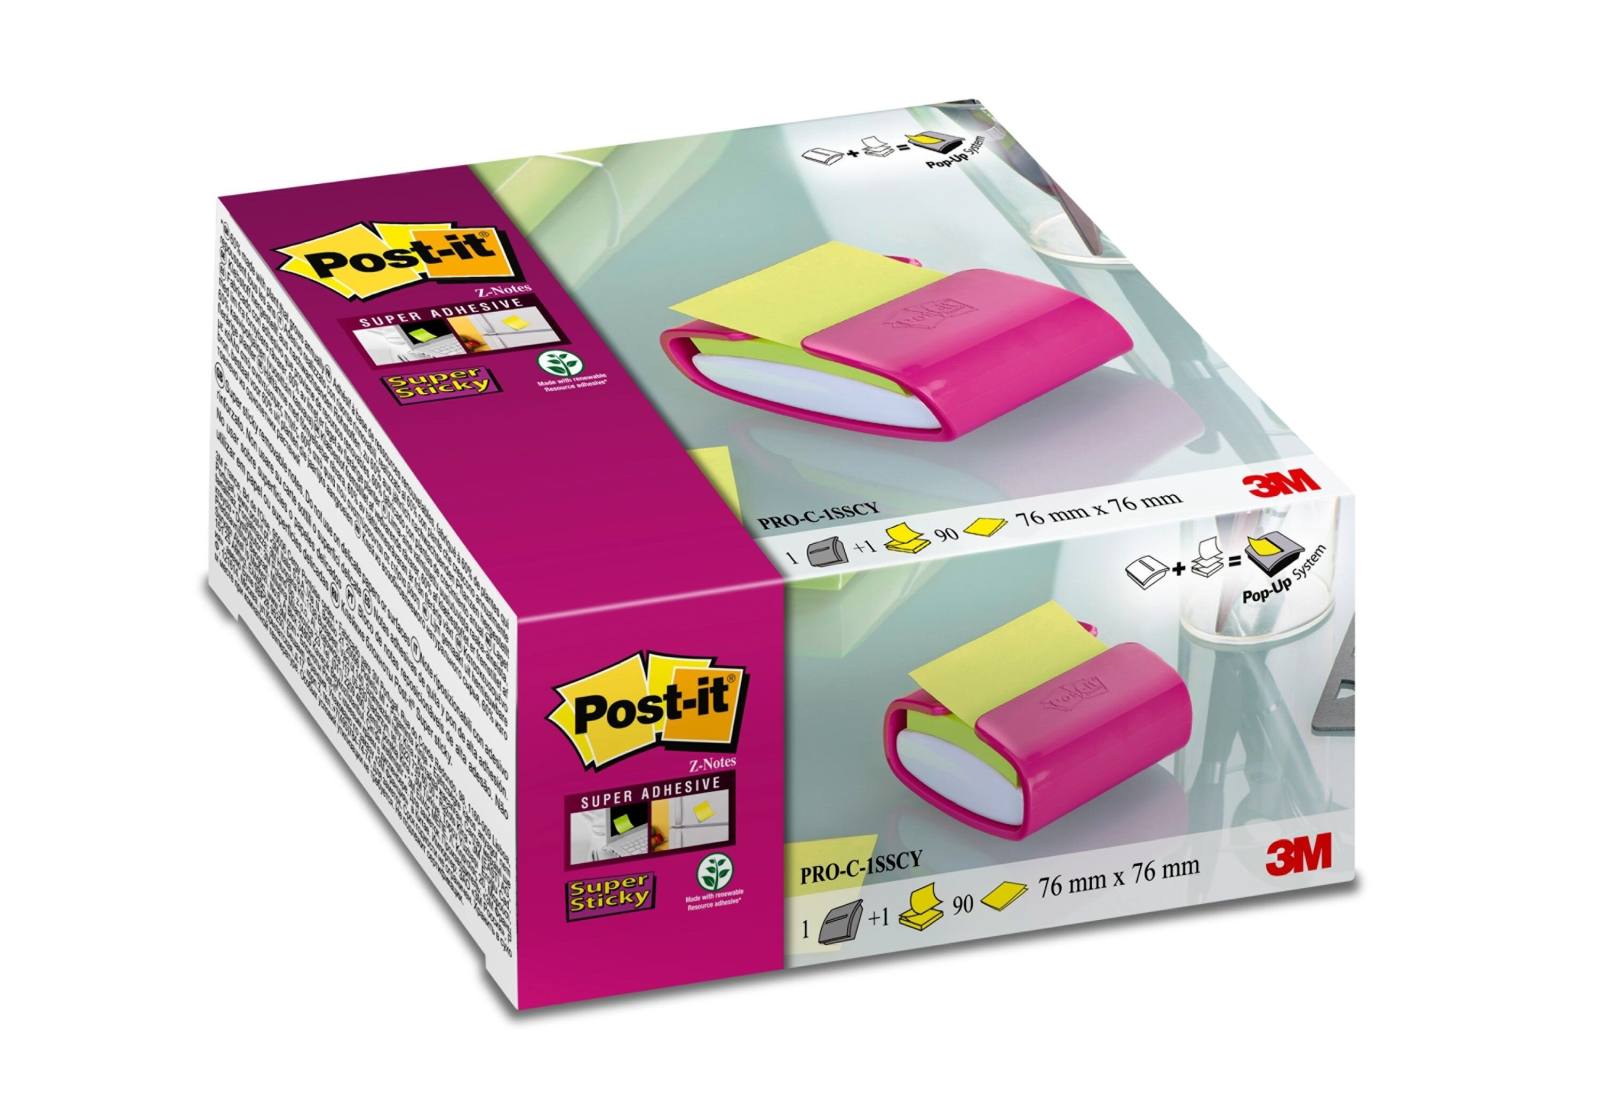 3M Post-it Super Sticky Z-Notes dispenser PRO-F1NG, 86 mm x 46 mm x 103 mm, fuchsia, 1 Z-Notes dispenser, 1 pad of 90 sheets